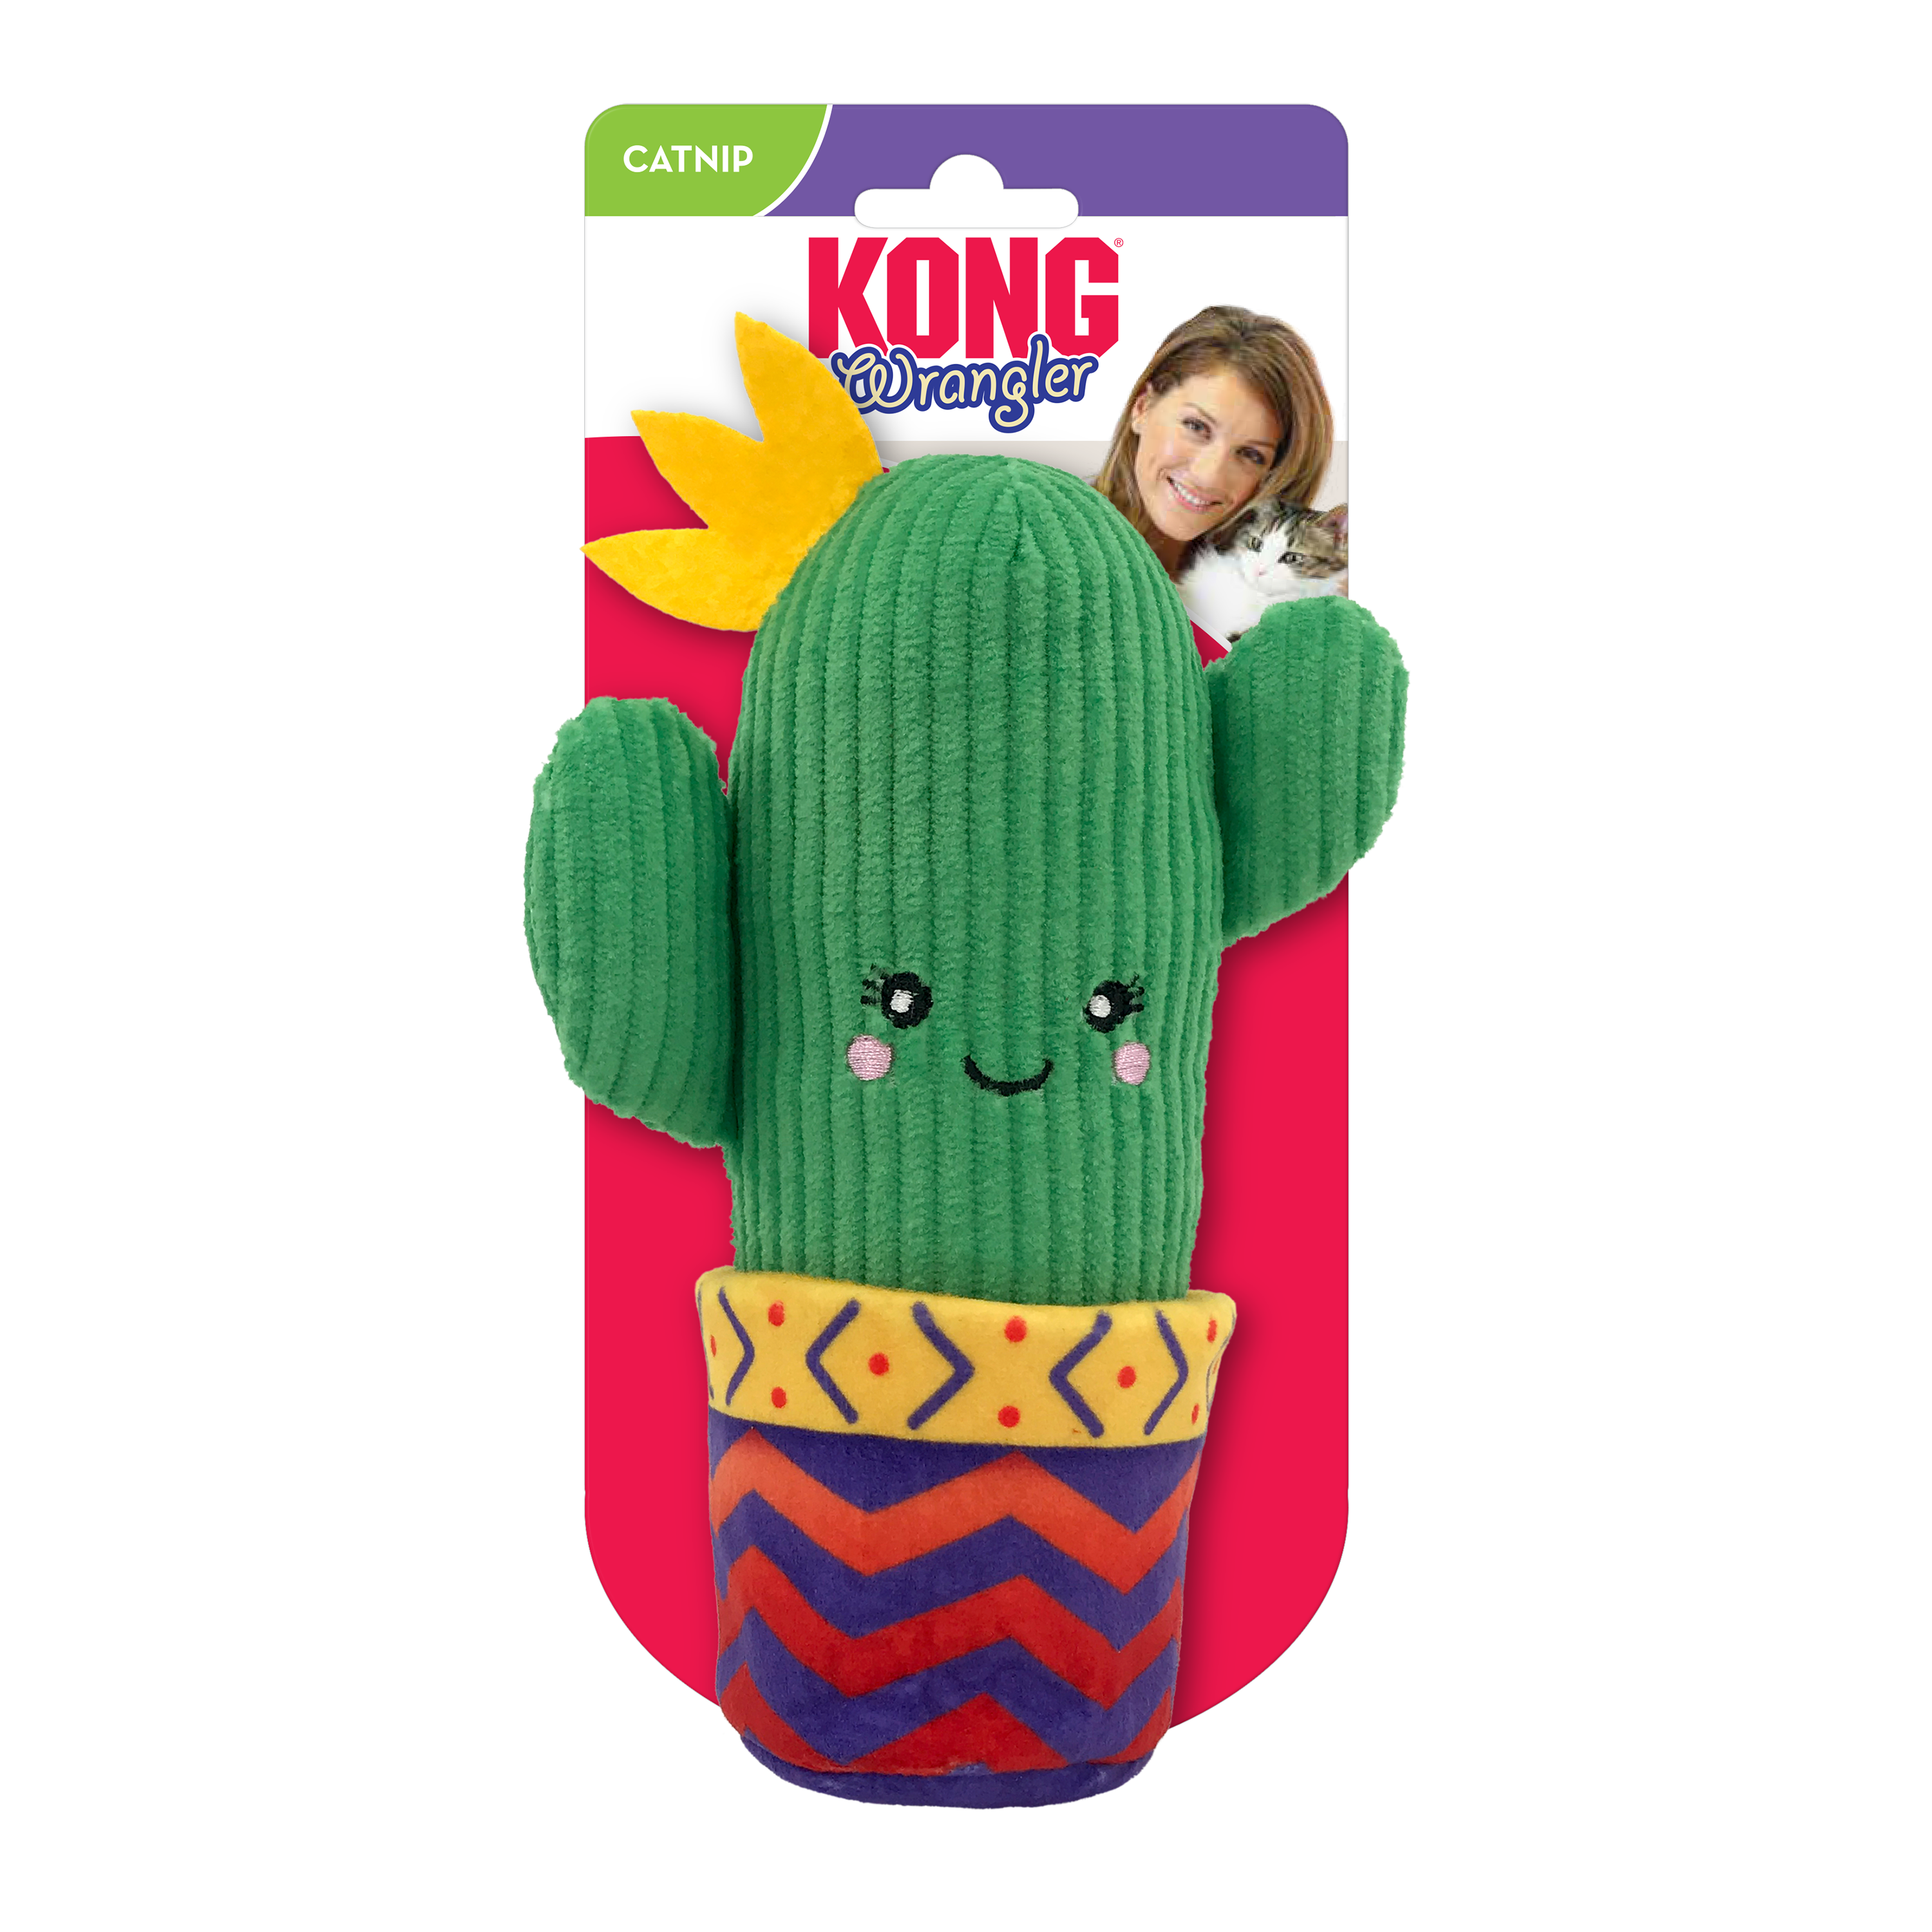 Wrangler Cactus onpack product image